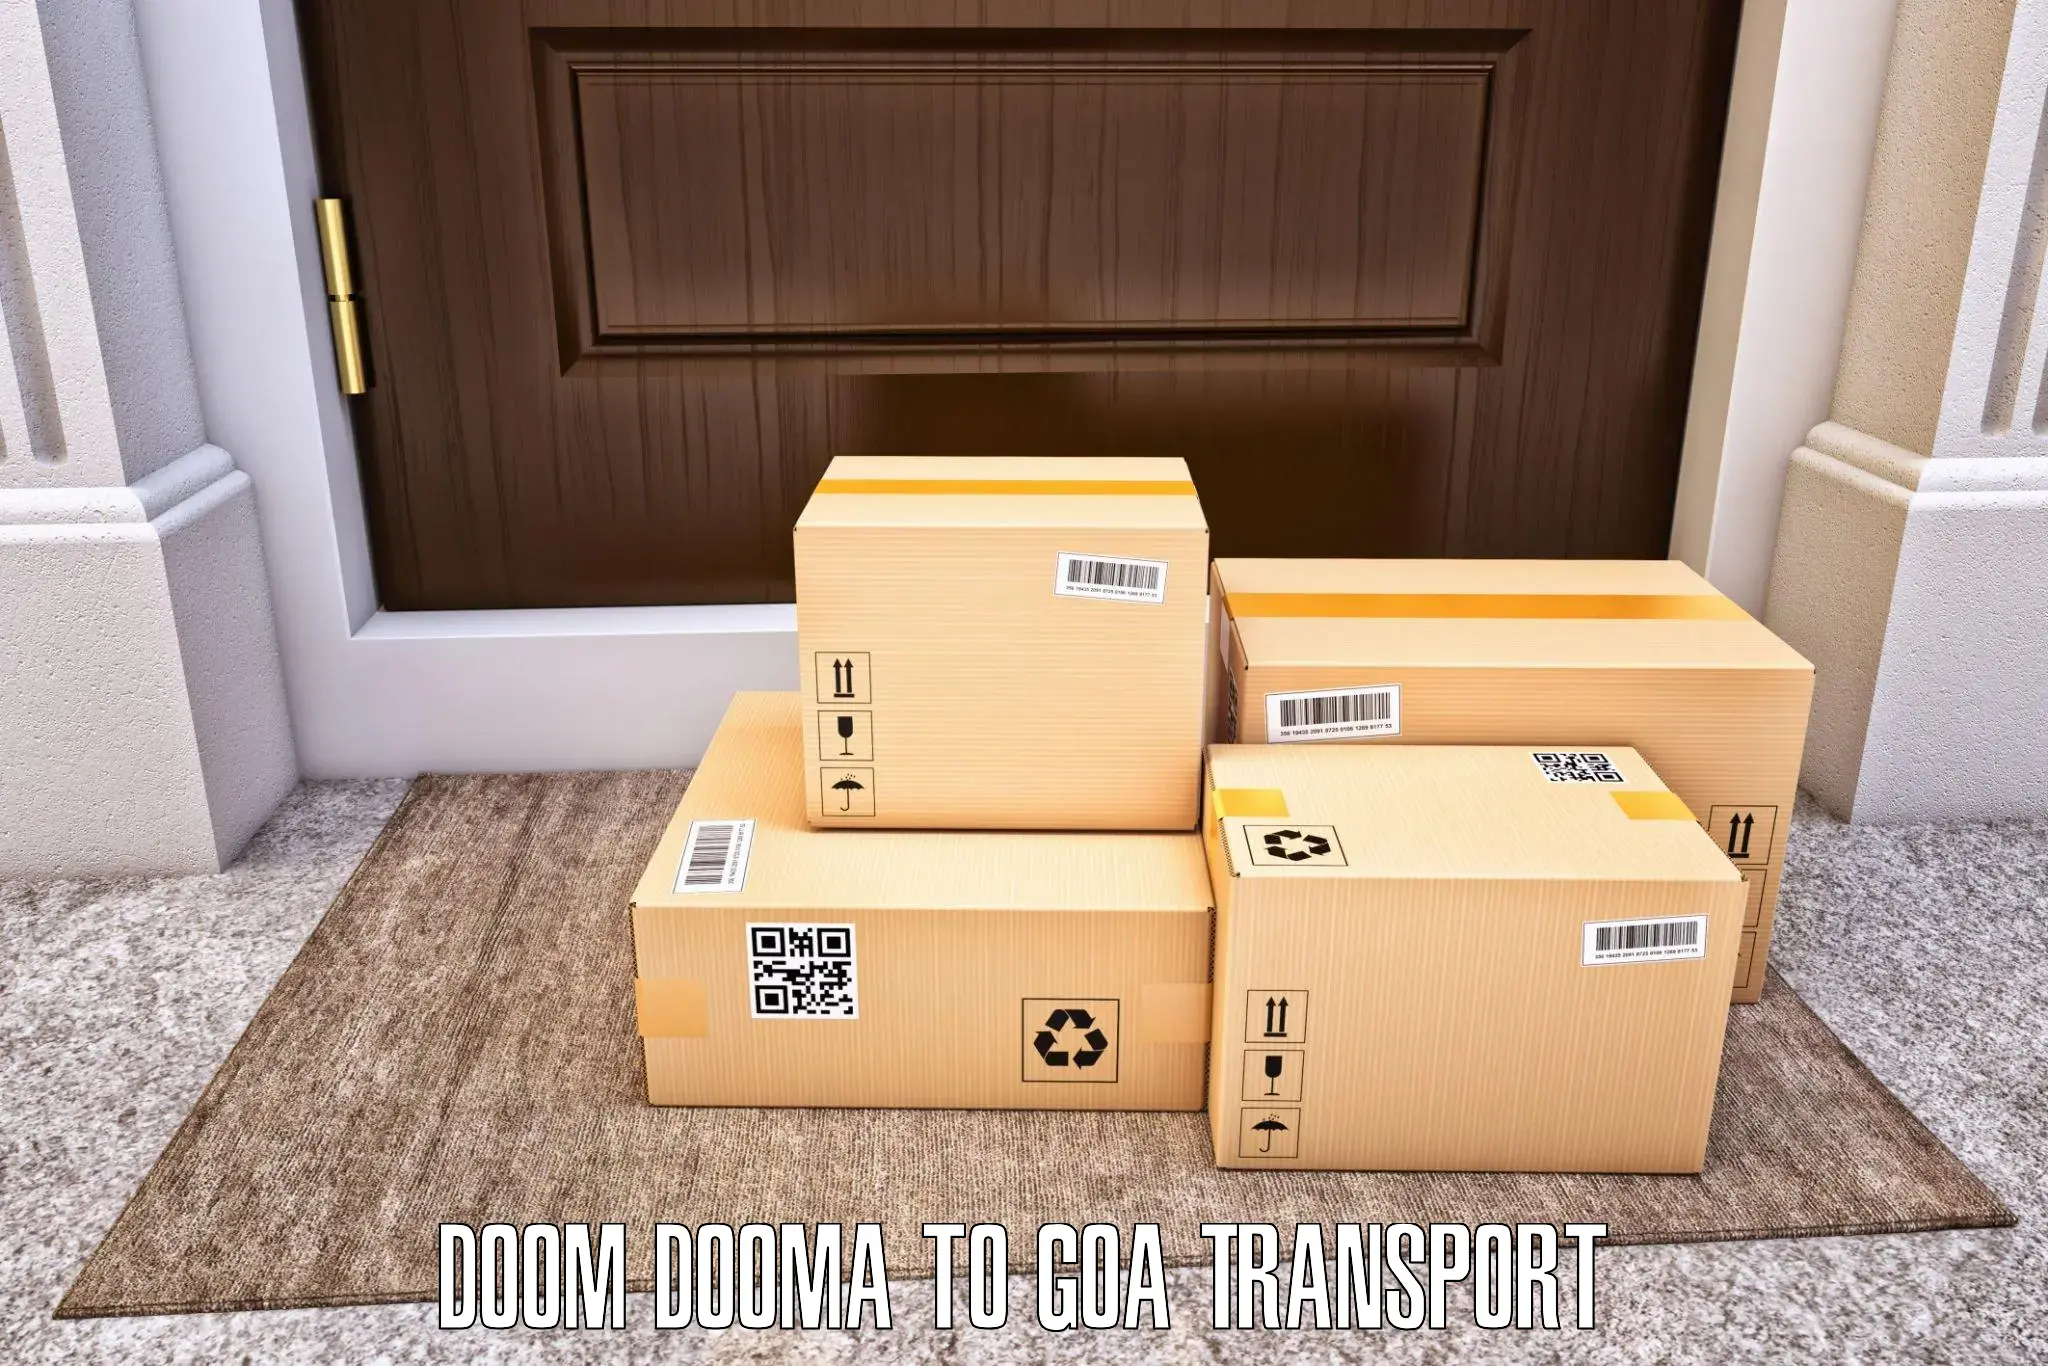 Express transport services Doom Dooma to Ponda